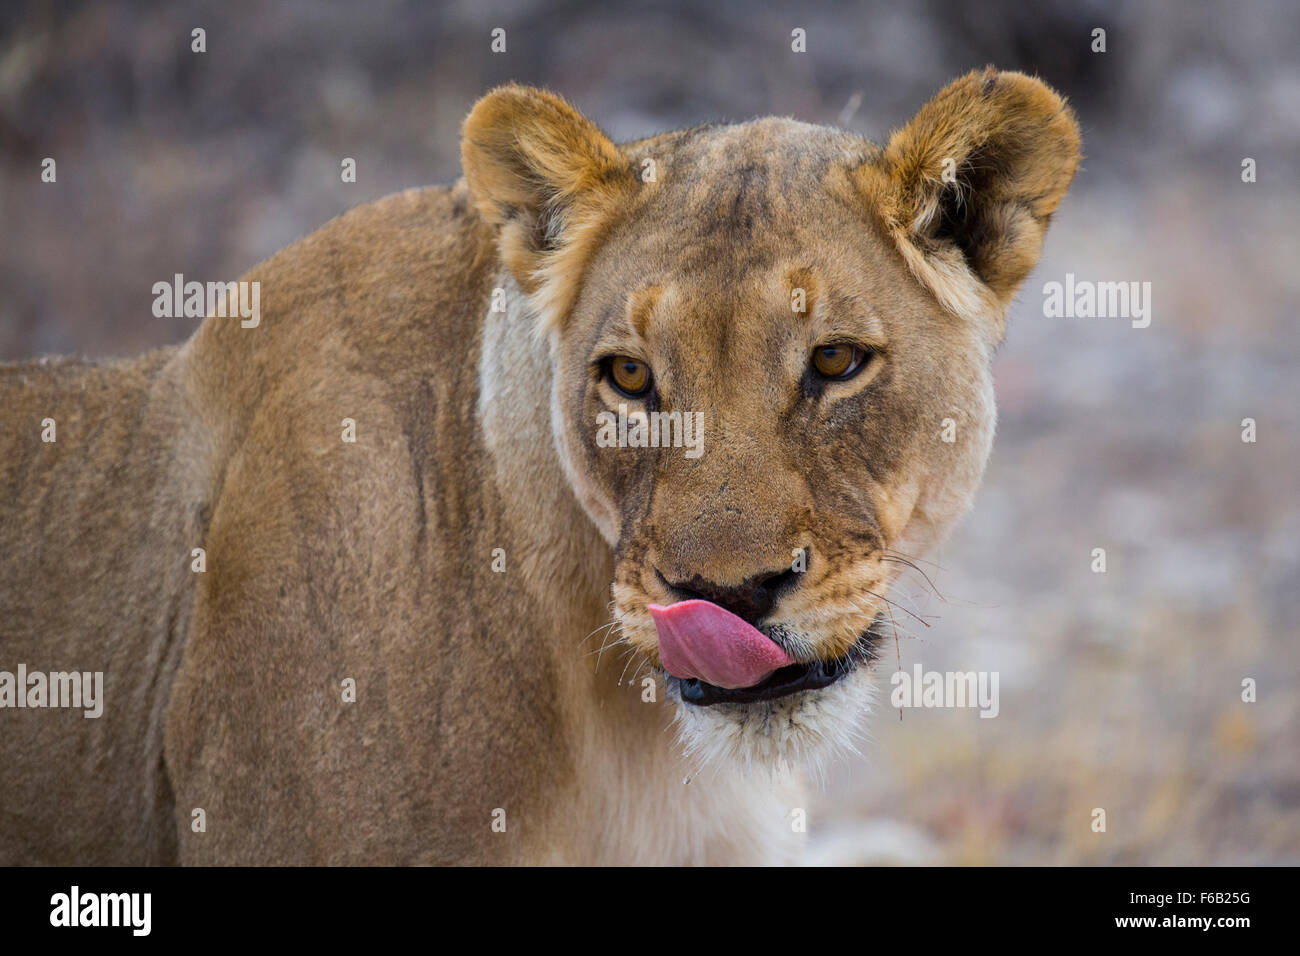 Lioness in Etosha National Park, Namibia, Africa Stock Photo